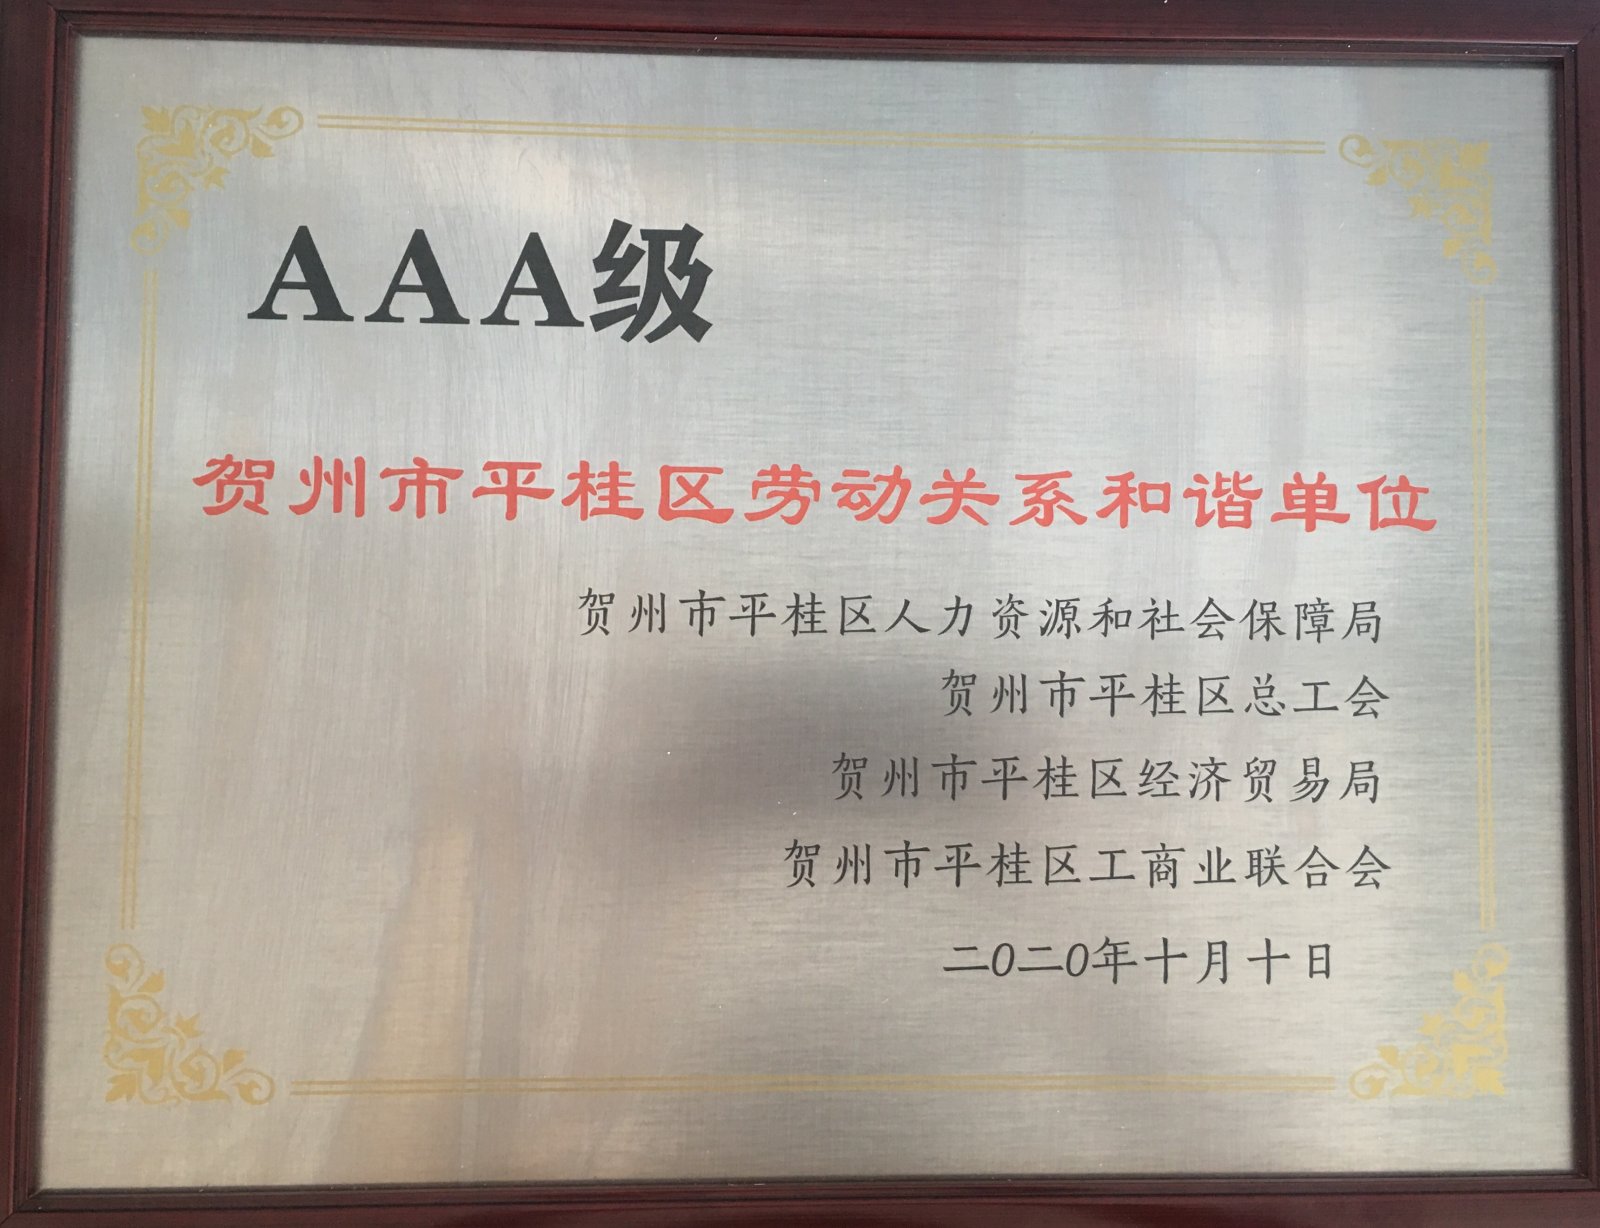 科隆粉体公司荣获贺州市平桂区“AAA级劳动关系和谐单位”称号(图3)